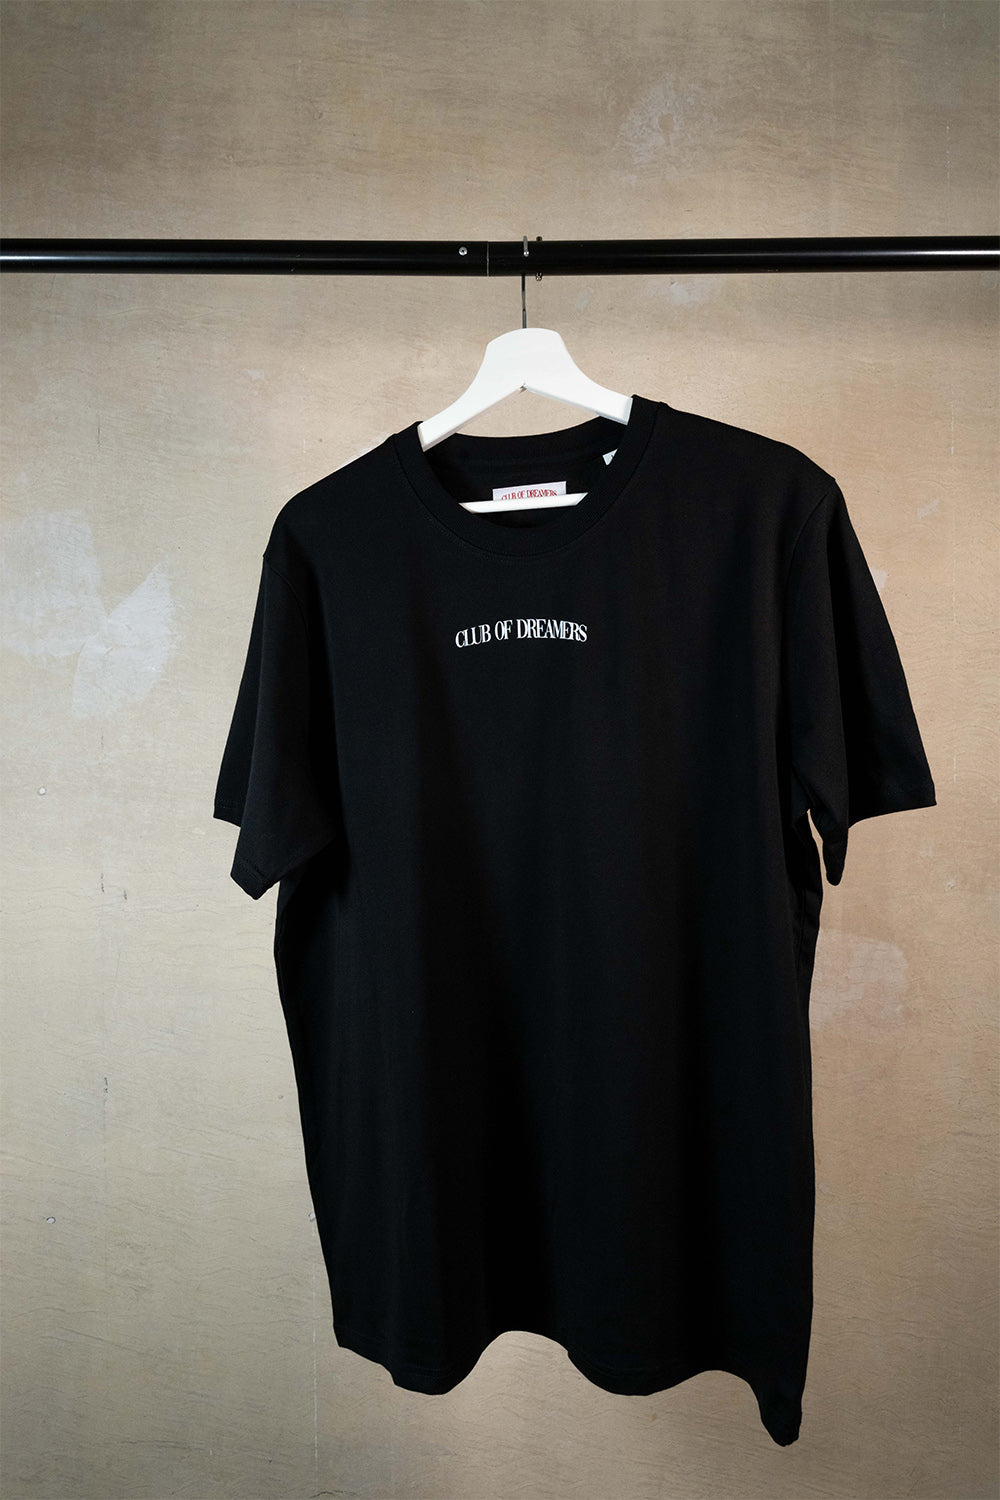 Streetwear Brand Oversize T-Shirt Damen Herren Schwarz Black Luxus Bio Baumwolle Schrift Front seitlich Print Unisex Tee Club of Dreamers Marke Beste